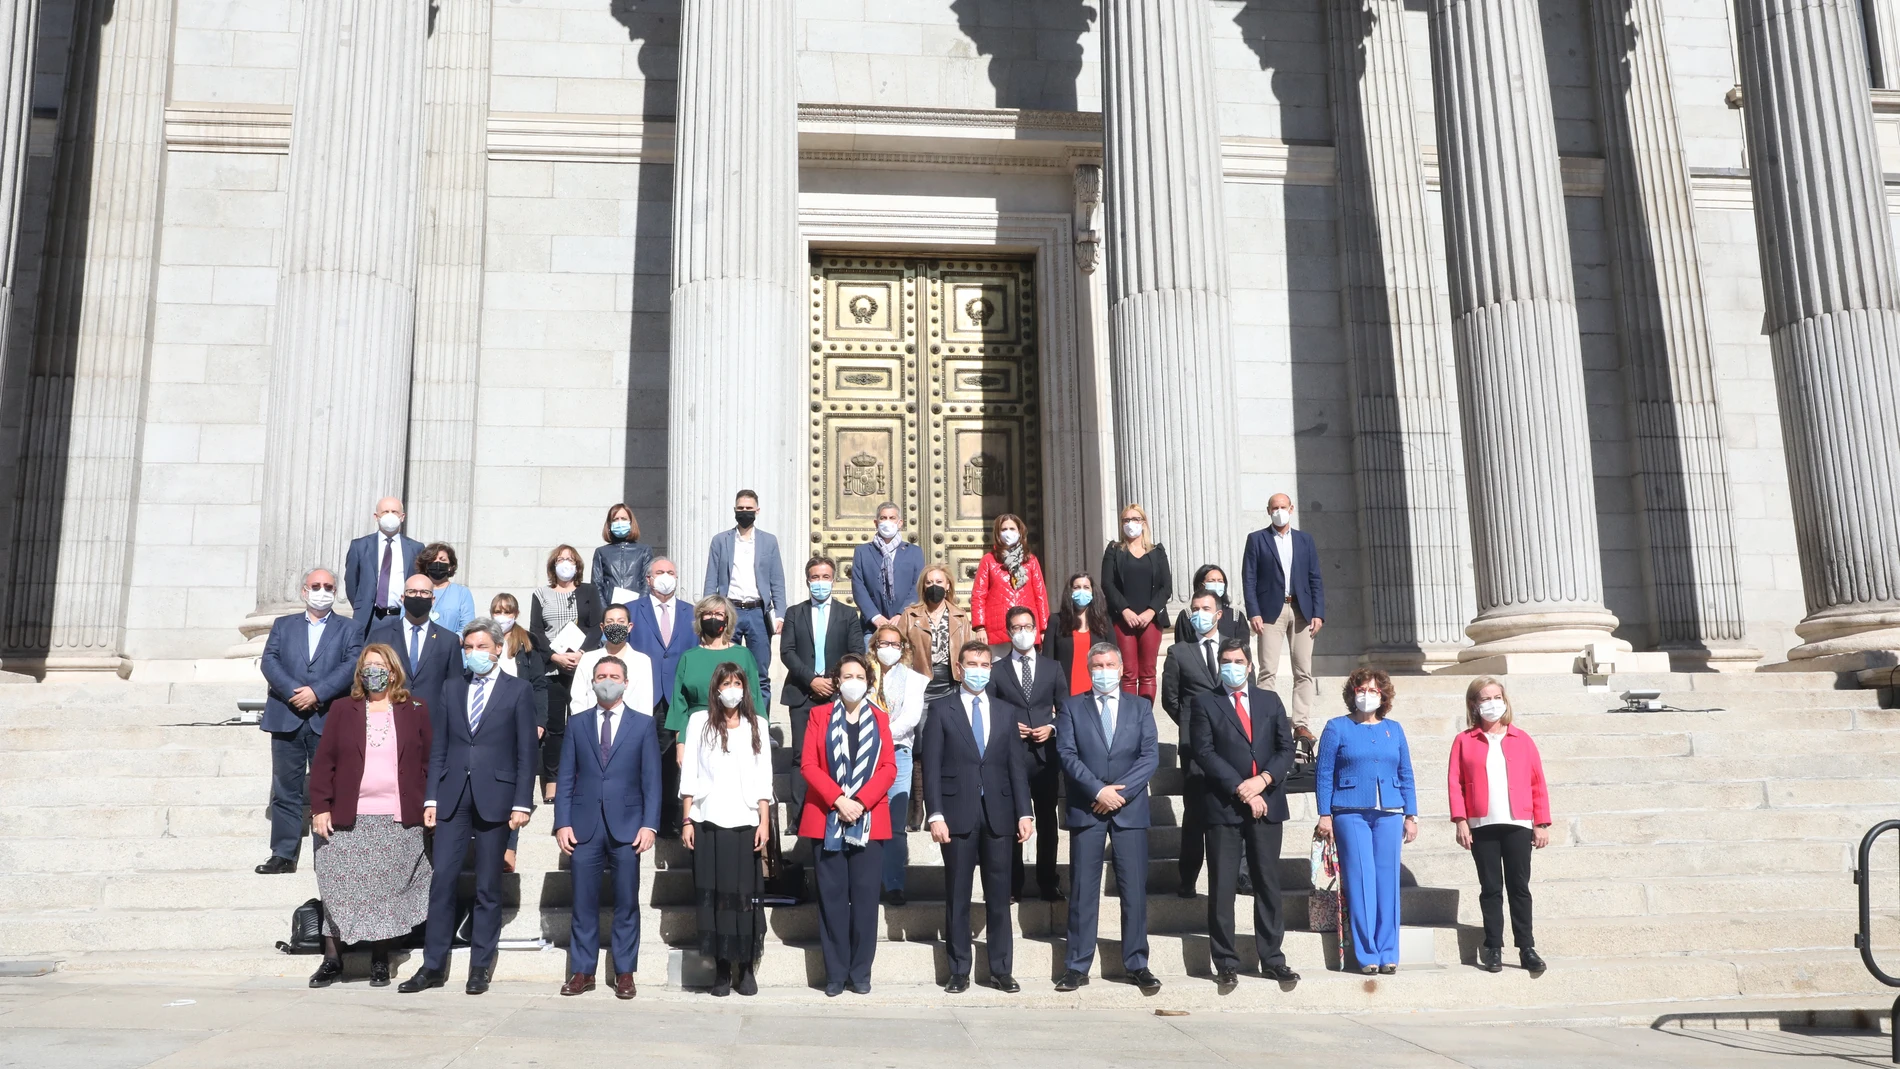 Fotografía conjunta de los miembros de la Comisión de seguimiento y evaluación del Pacto de Toledo, frente al Congreso de los Diputados, en Madrid (España), a 27 de octubre de 2020.